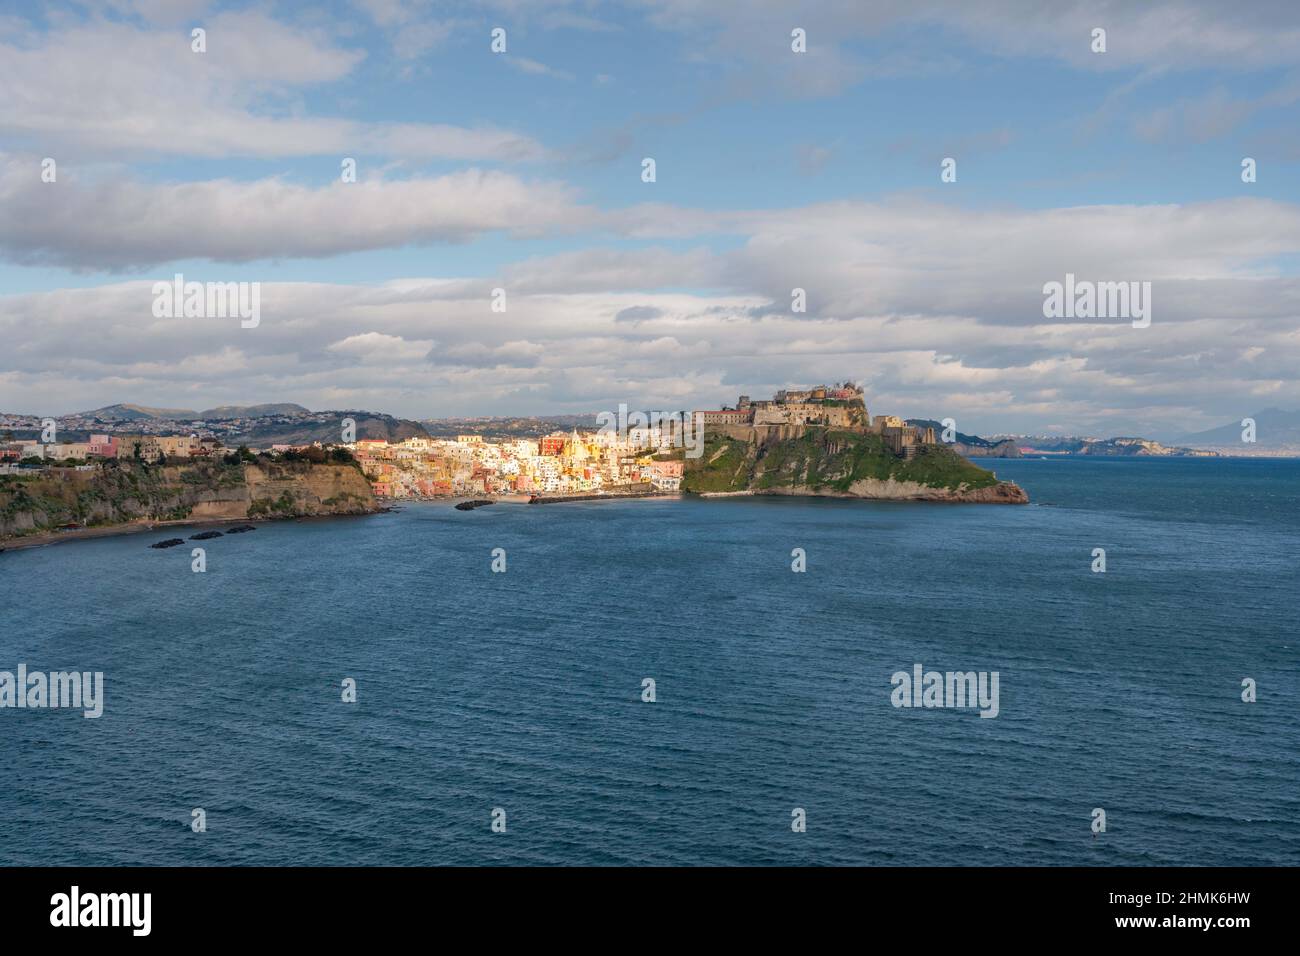 Procida - Napoli, Italia, 24 gennaio 2022: L'isola panoramica di Procida è baciata dal sole, sullo sfondo della baia di Napoli. Foto di alta qualità Foto Stock